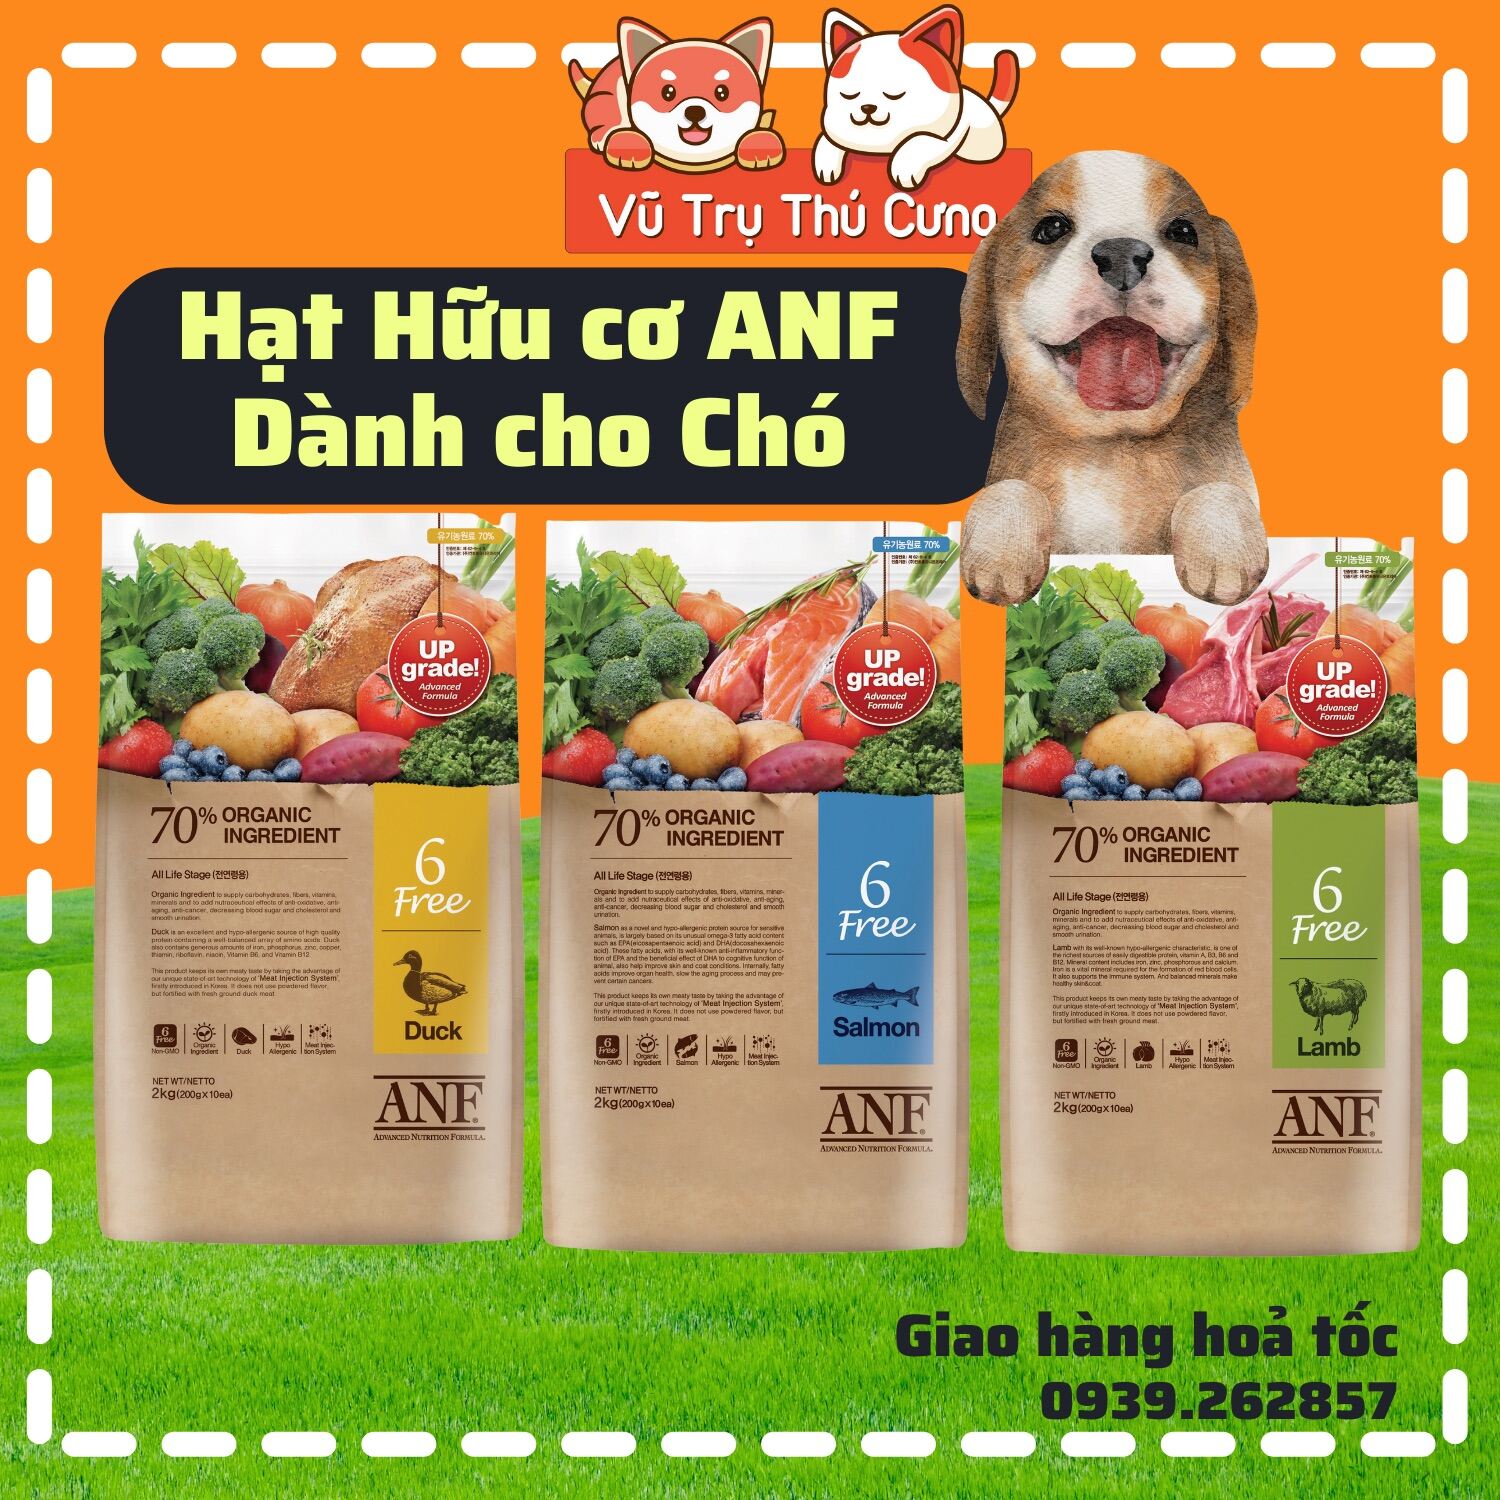 Hạt ANF hữu cơ dành cho Chó, thức ăn cho chó mọi độ tuổi từ Hàn Quốc thumbnail